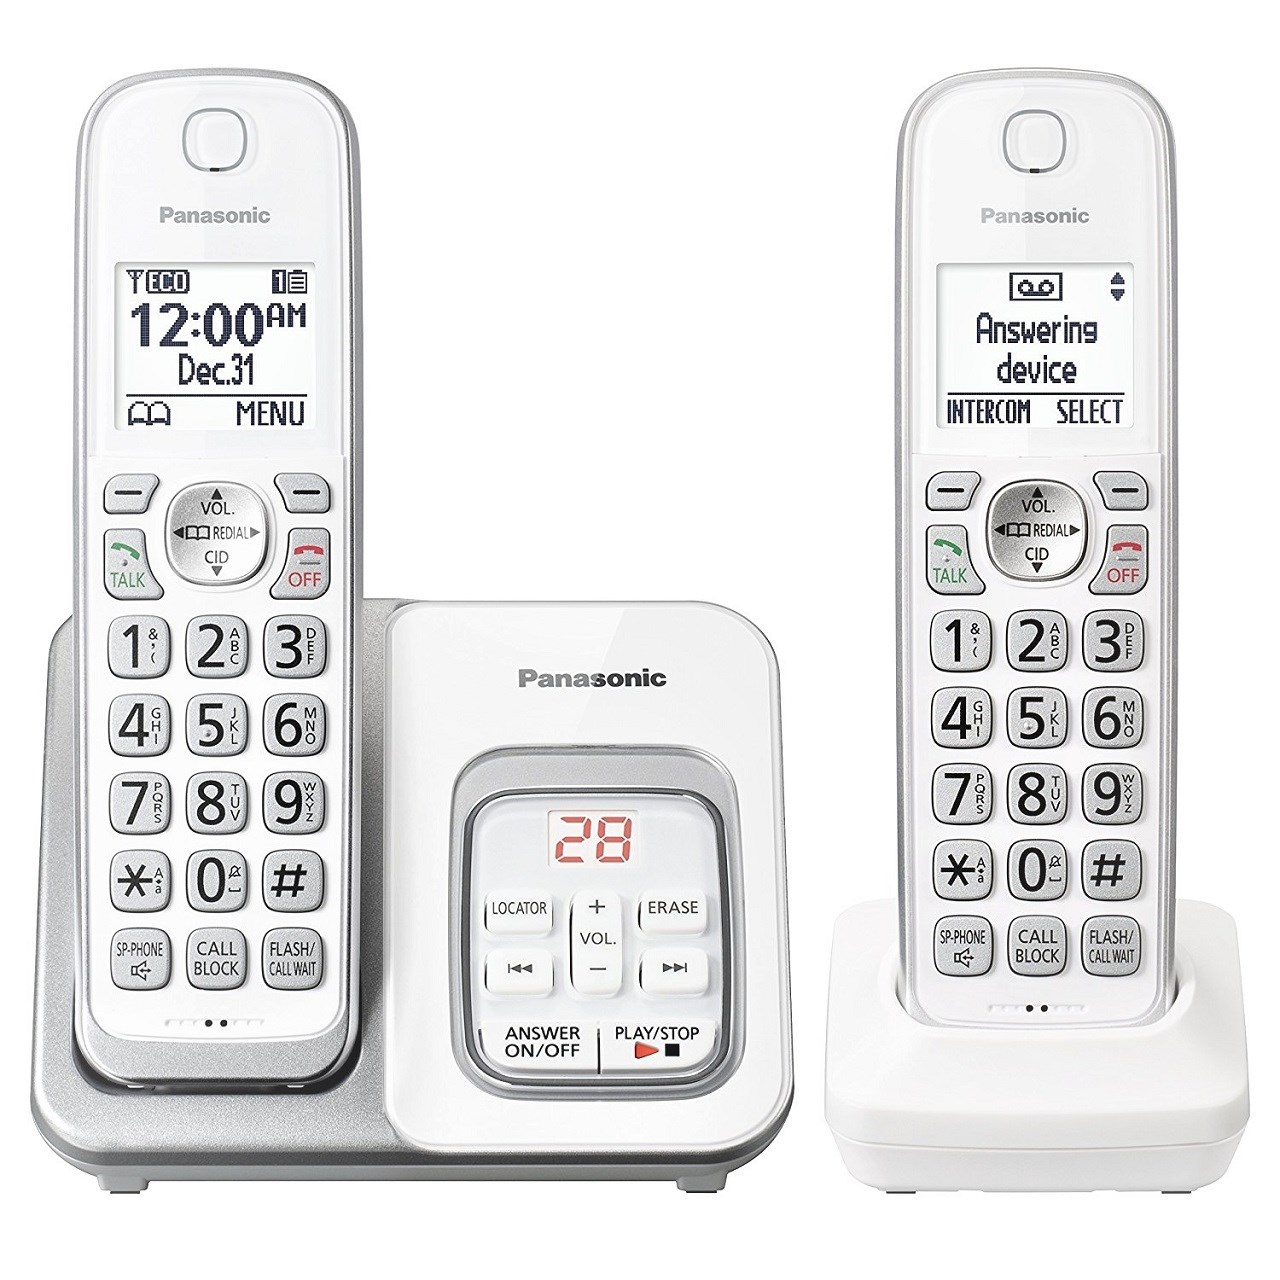 نکته خرید - قیمت روز تلفن بی سیم پاناسونیک مدل KX-TGD532 خرید